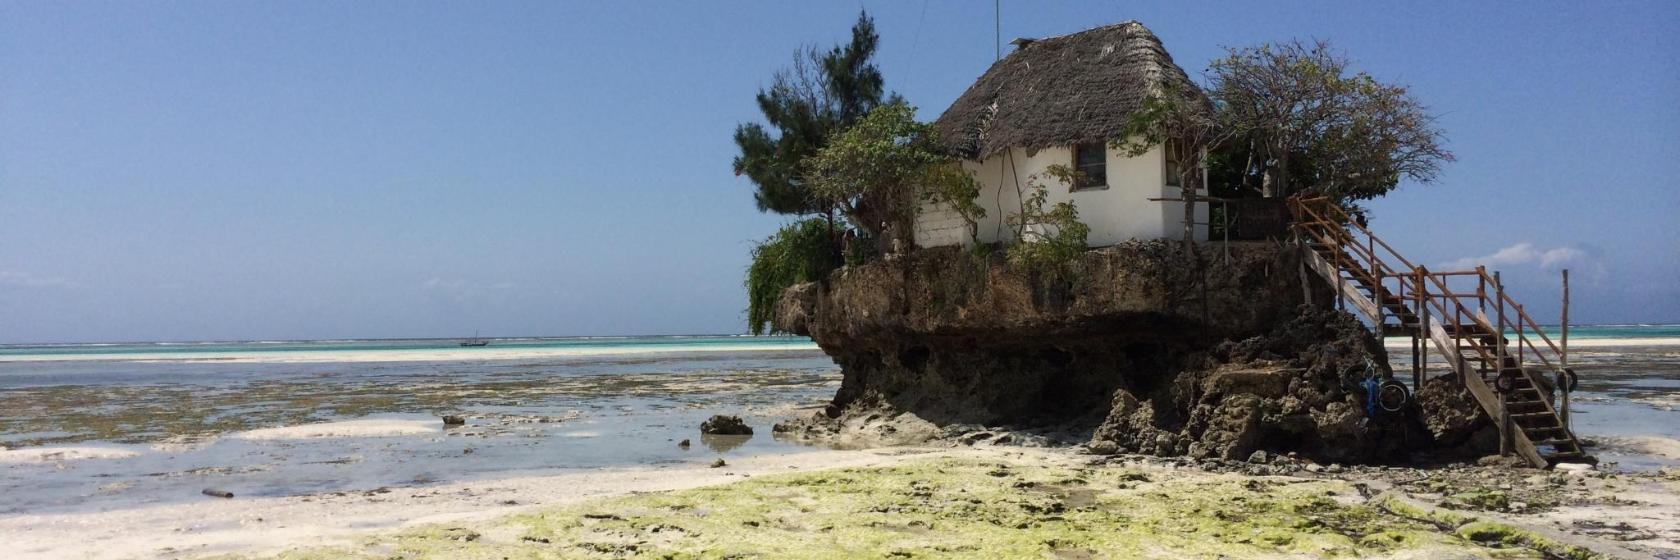 De 10 beste hotels op Zanzibar – Waar te verblijven op Zanzibar, Tanzania